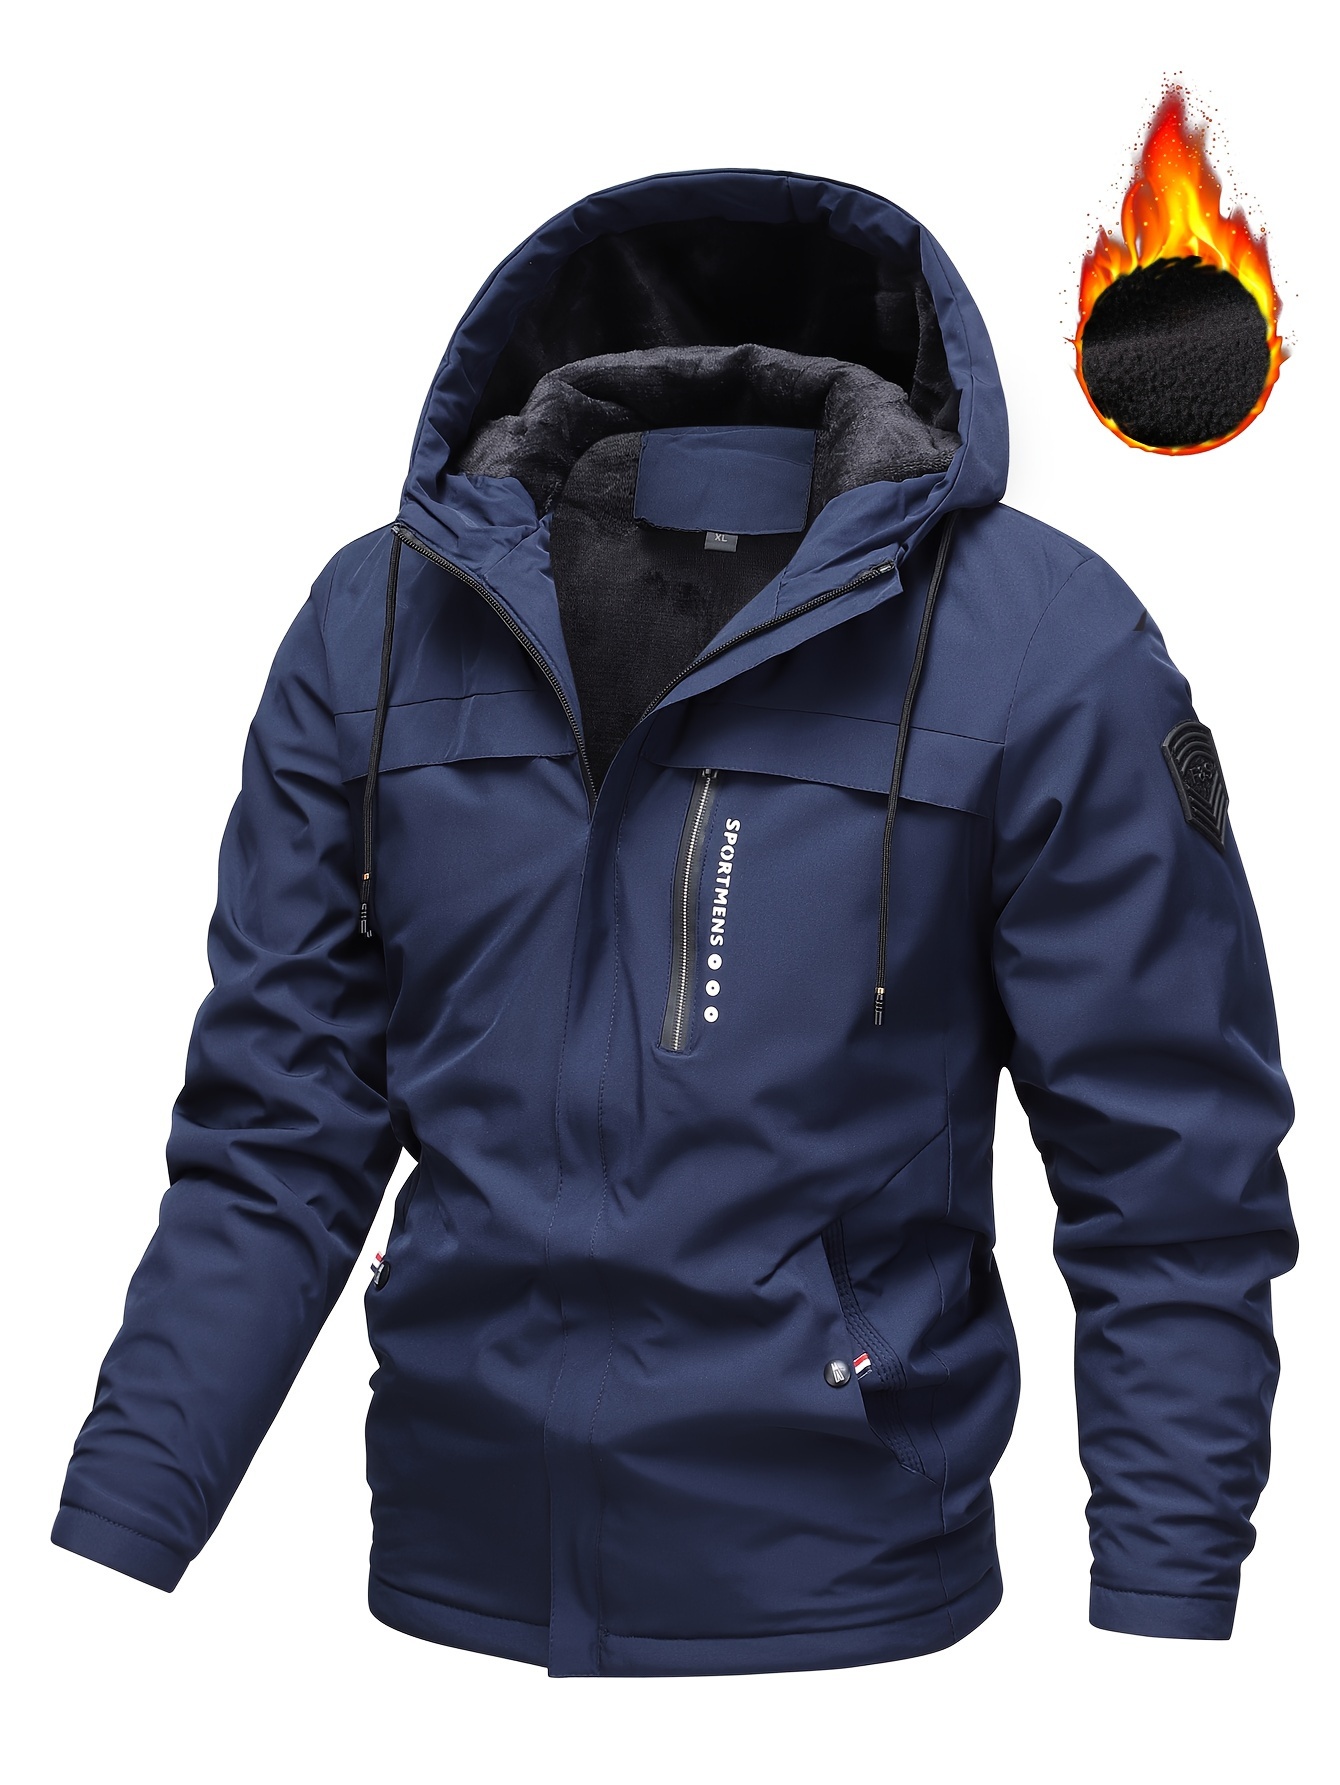 mens casual hooded windbreaker jacket for outdoor activities